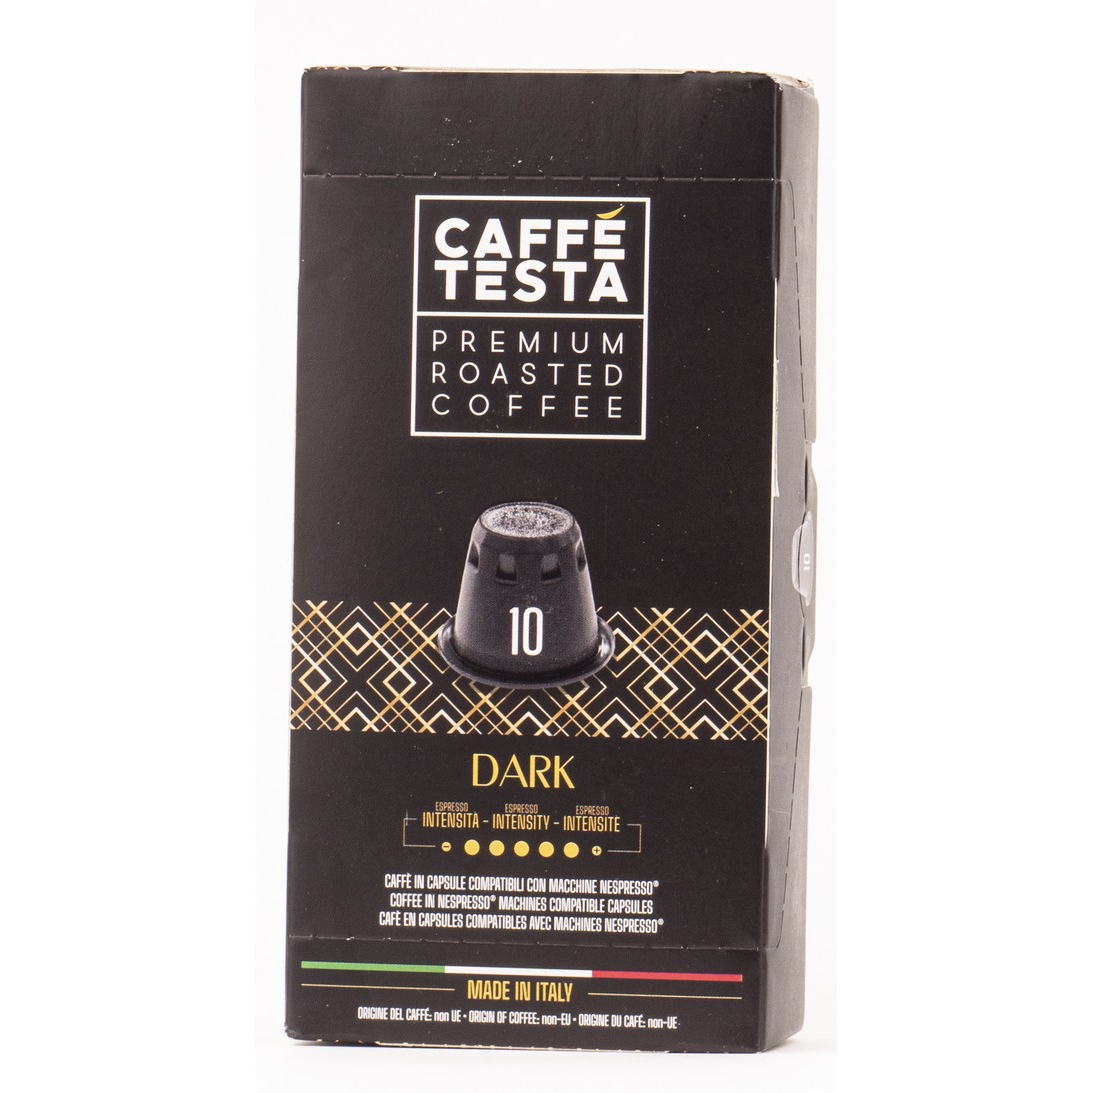 Кофе Caffe Testa Dark в капсулах 20/80, 55 г кофе в капсулах caffe vergnano dolce gusto intenso 12 ш тх 7 5 г